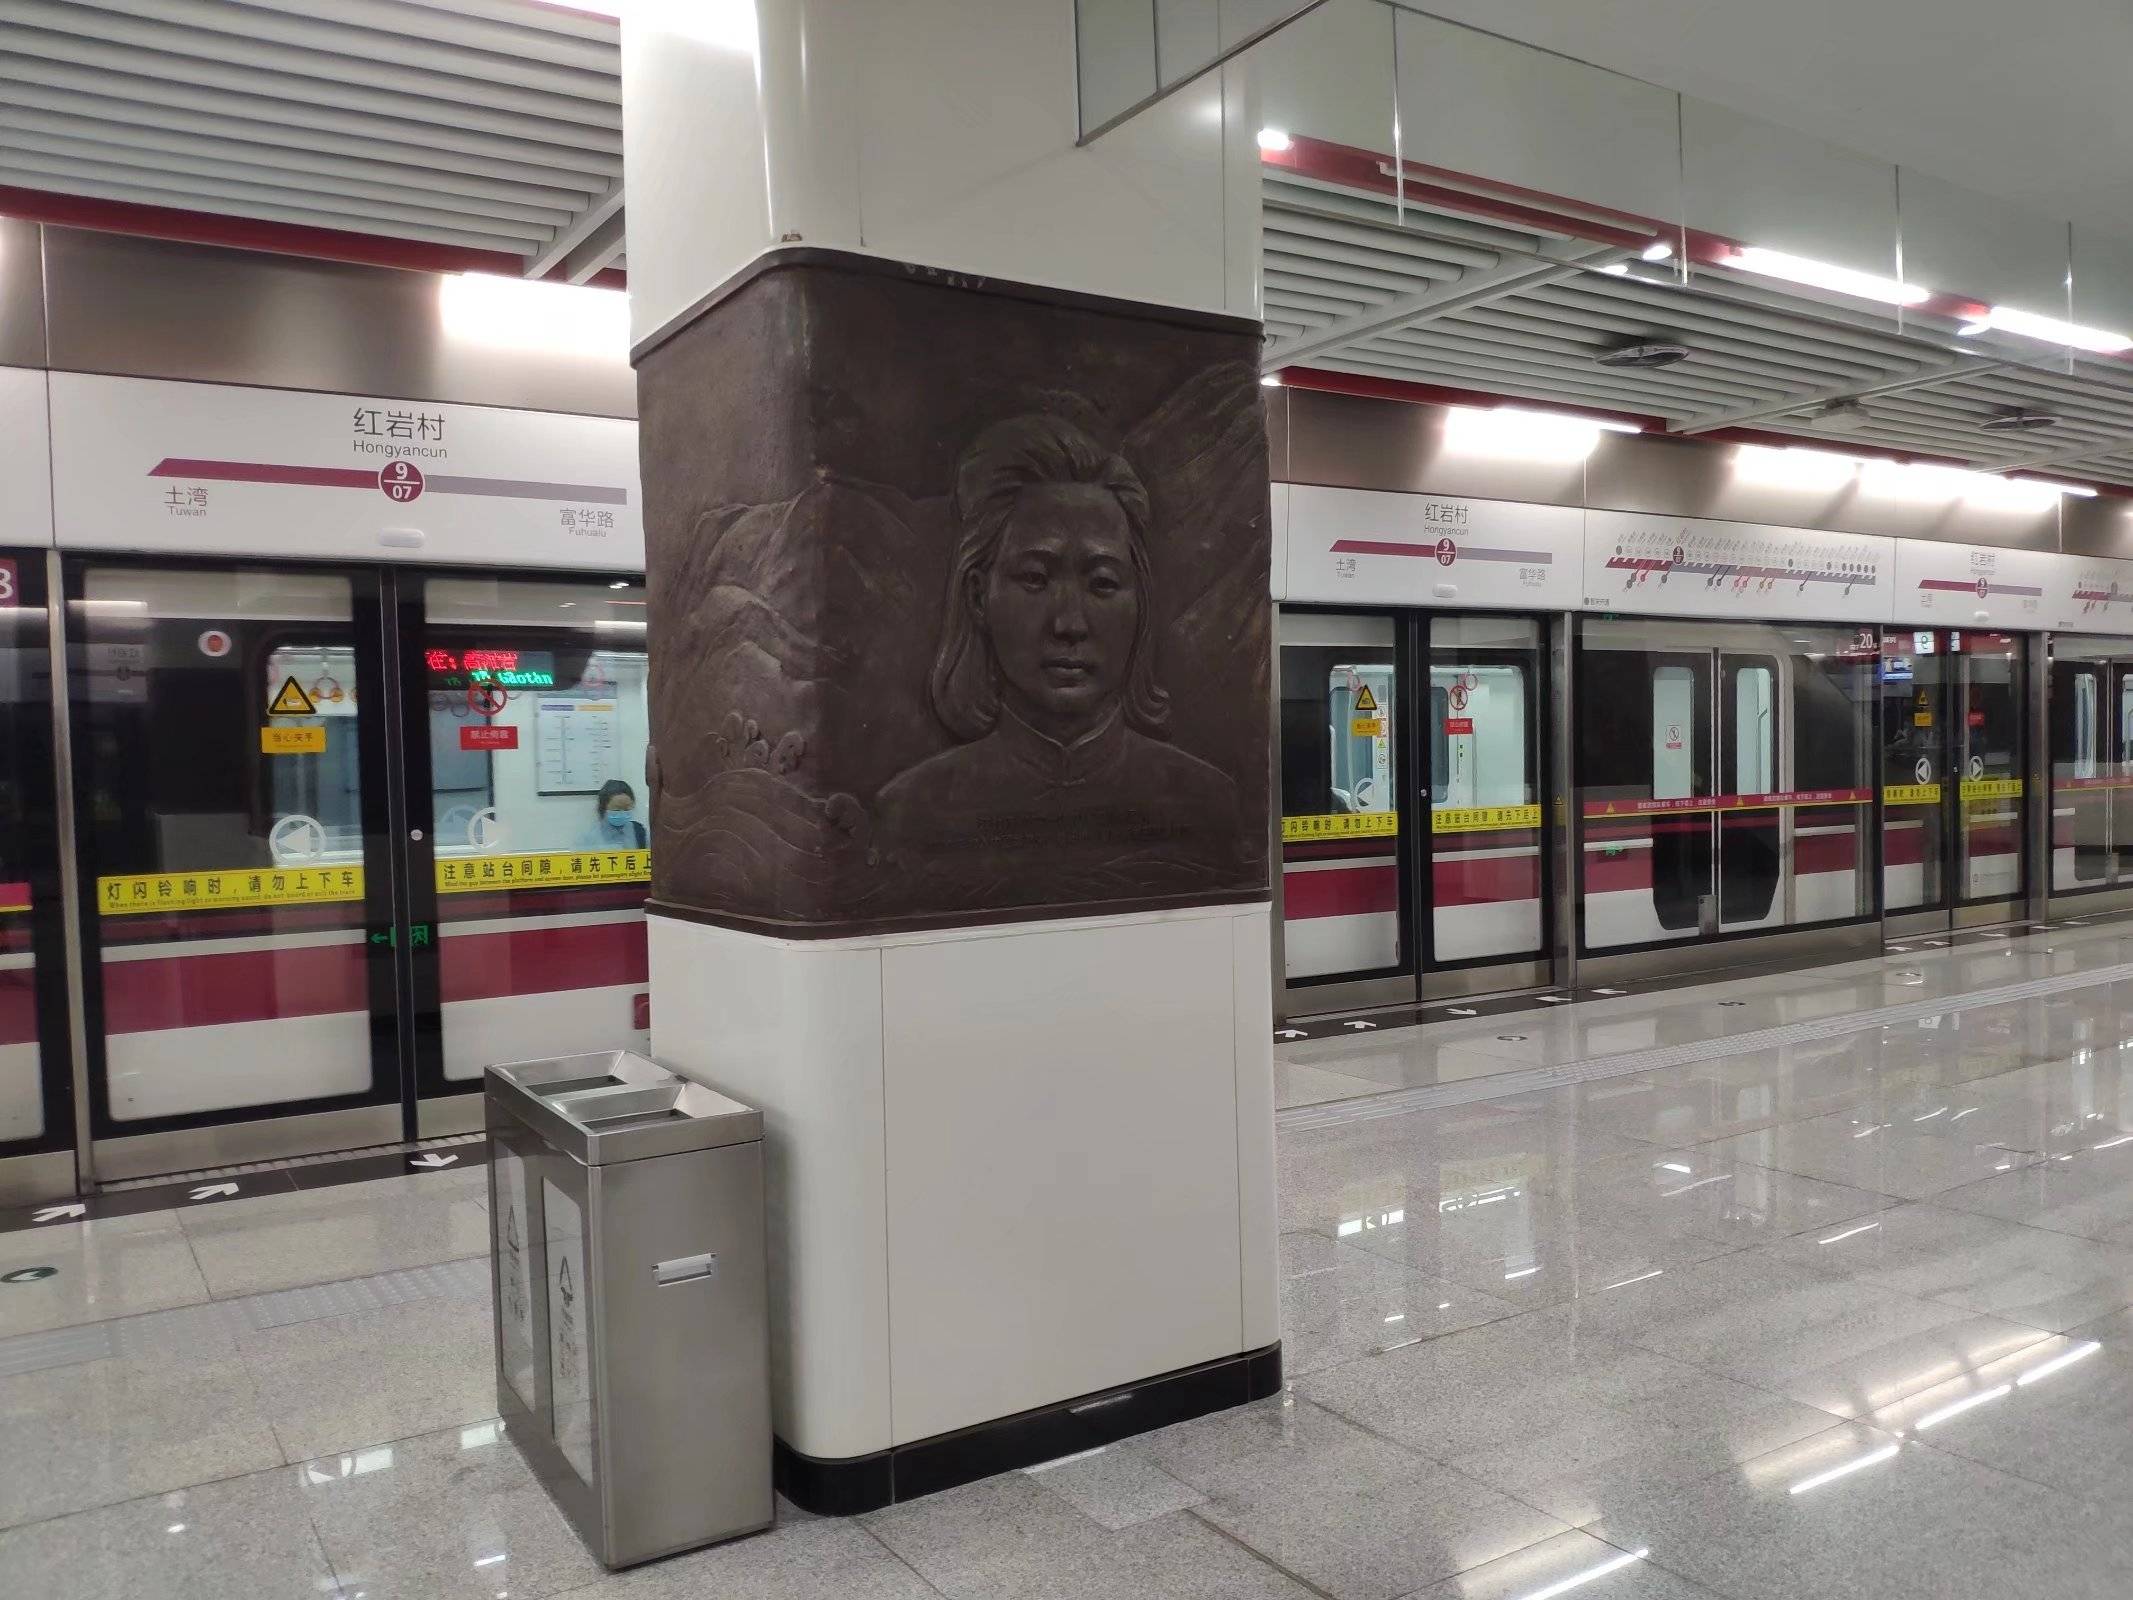 重庆轨道9号线红岩村站作为各个站点中最具特色的一个,笔者走进红岩村